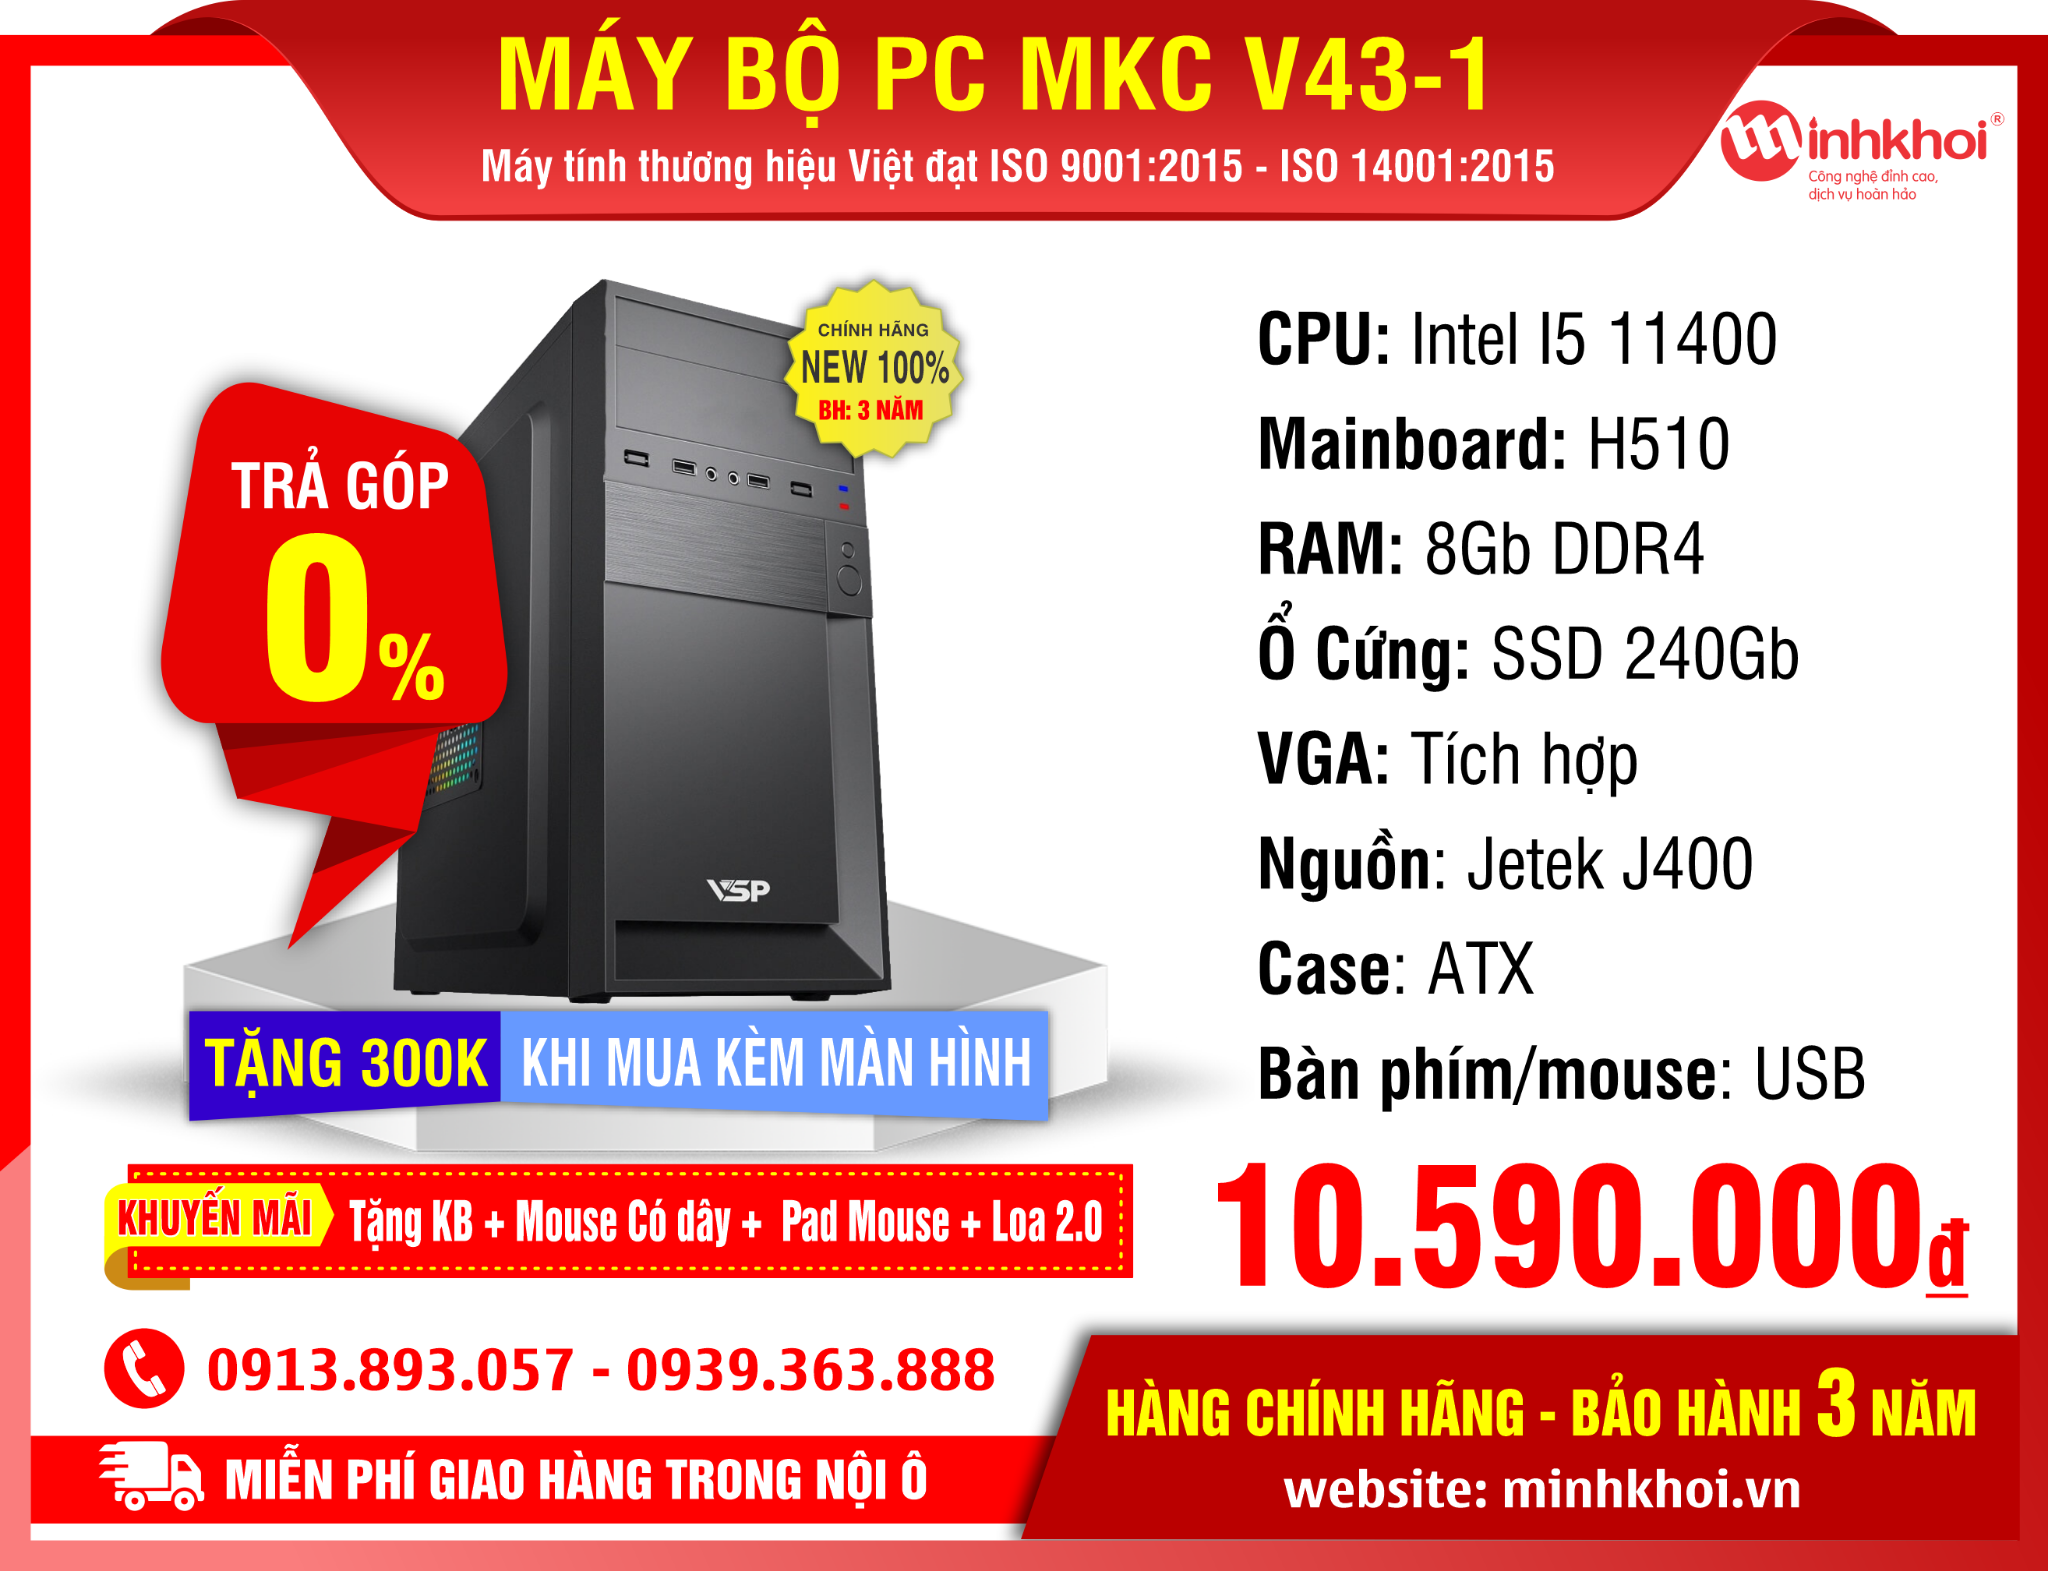 MÁY BỘ PC MKC V43-1